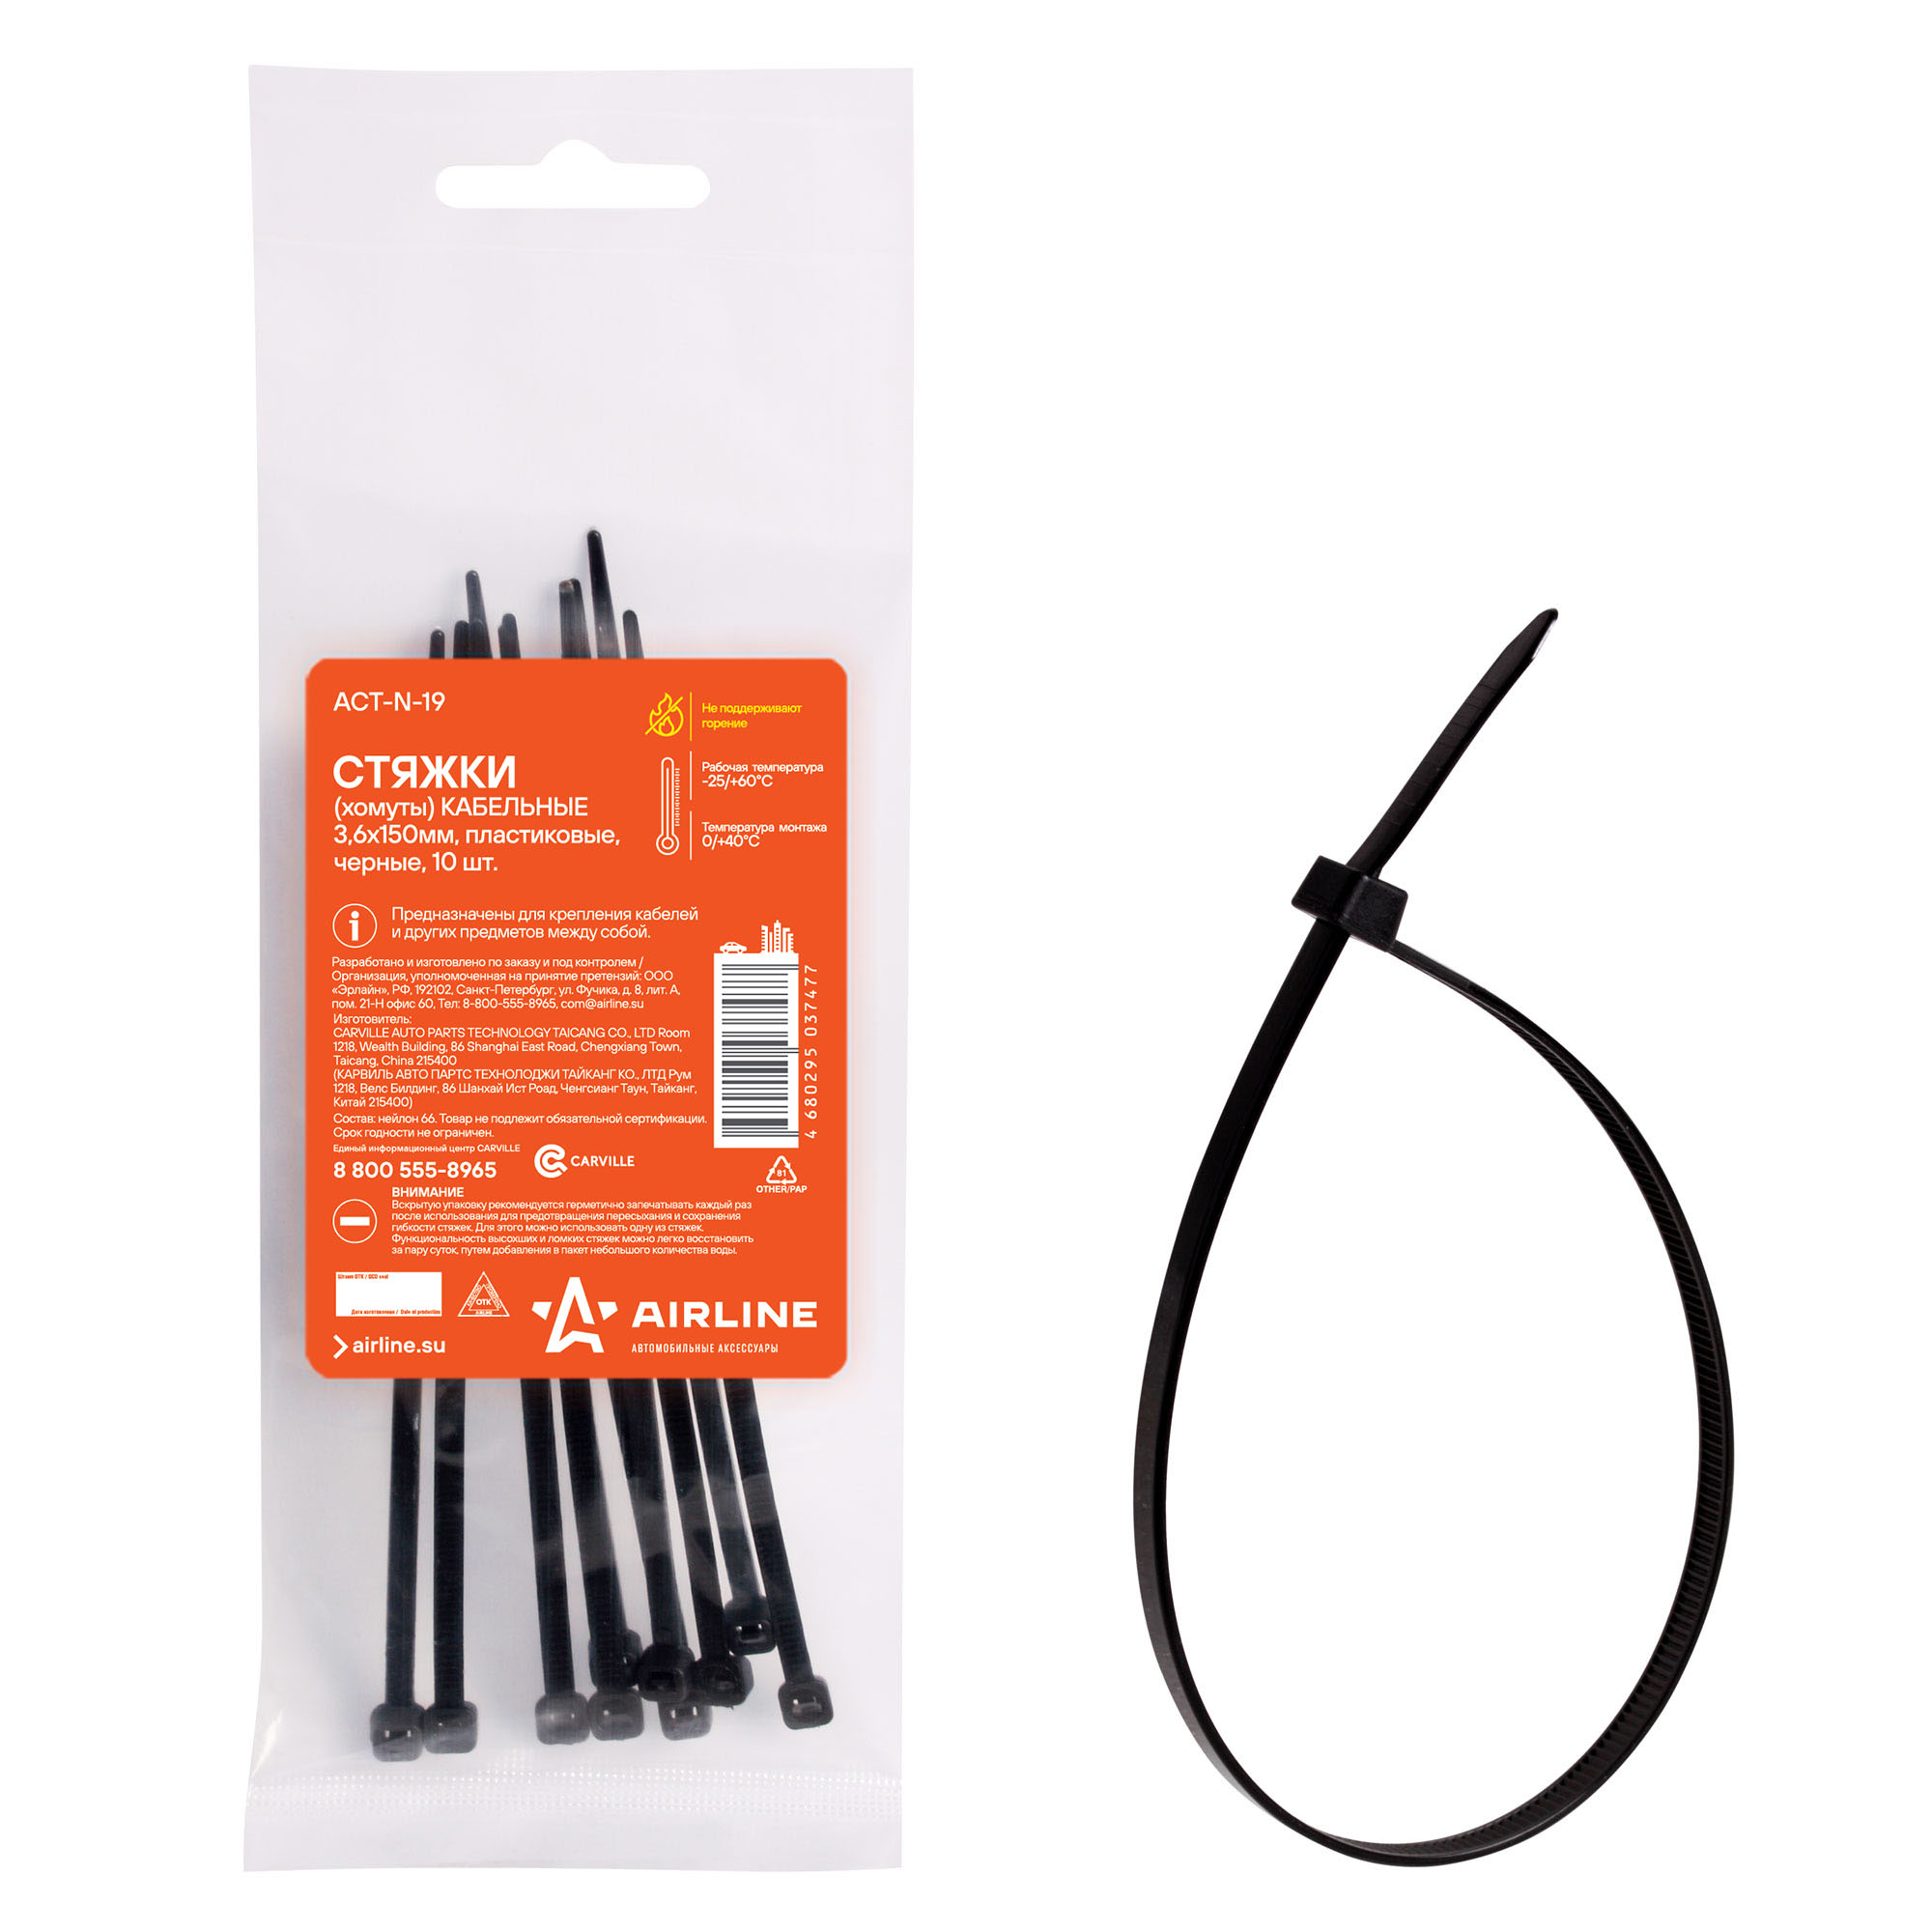 ACT-N-19 Стяжки (хомуты) кабельные 3,6*150 мм, пластиковые, черные, 10 шт. AIRLINE